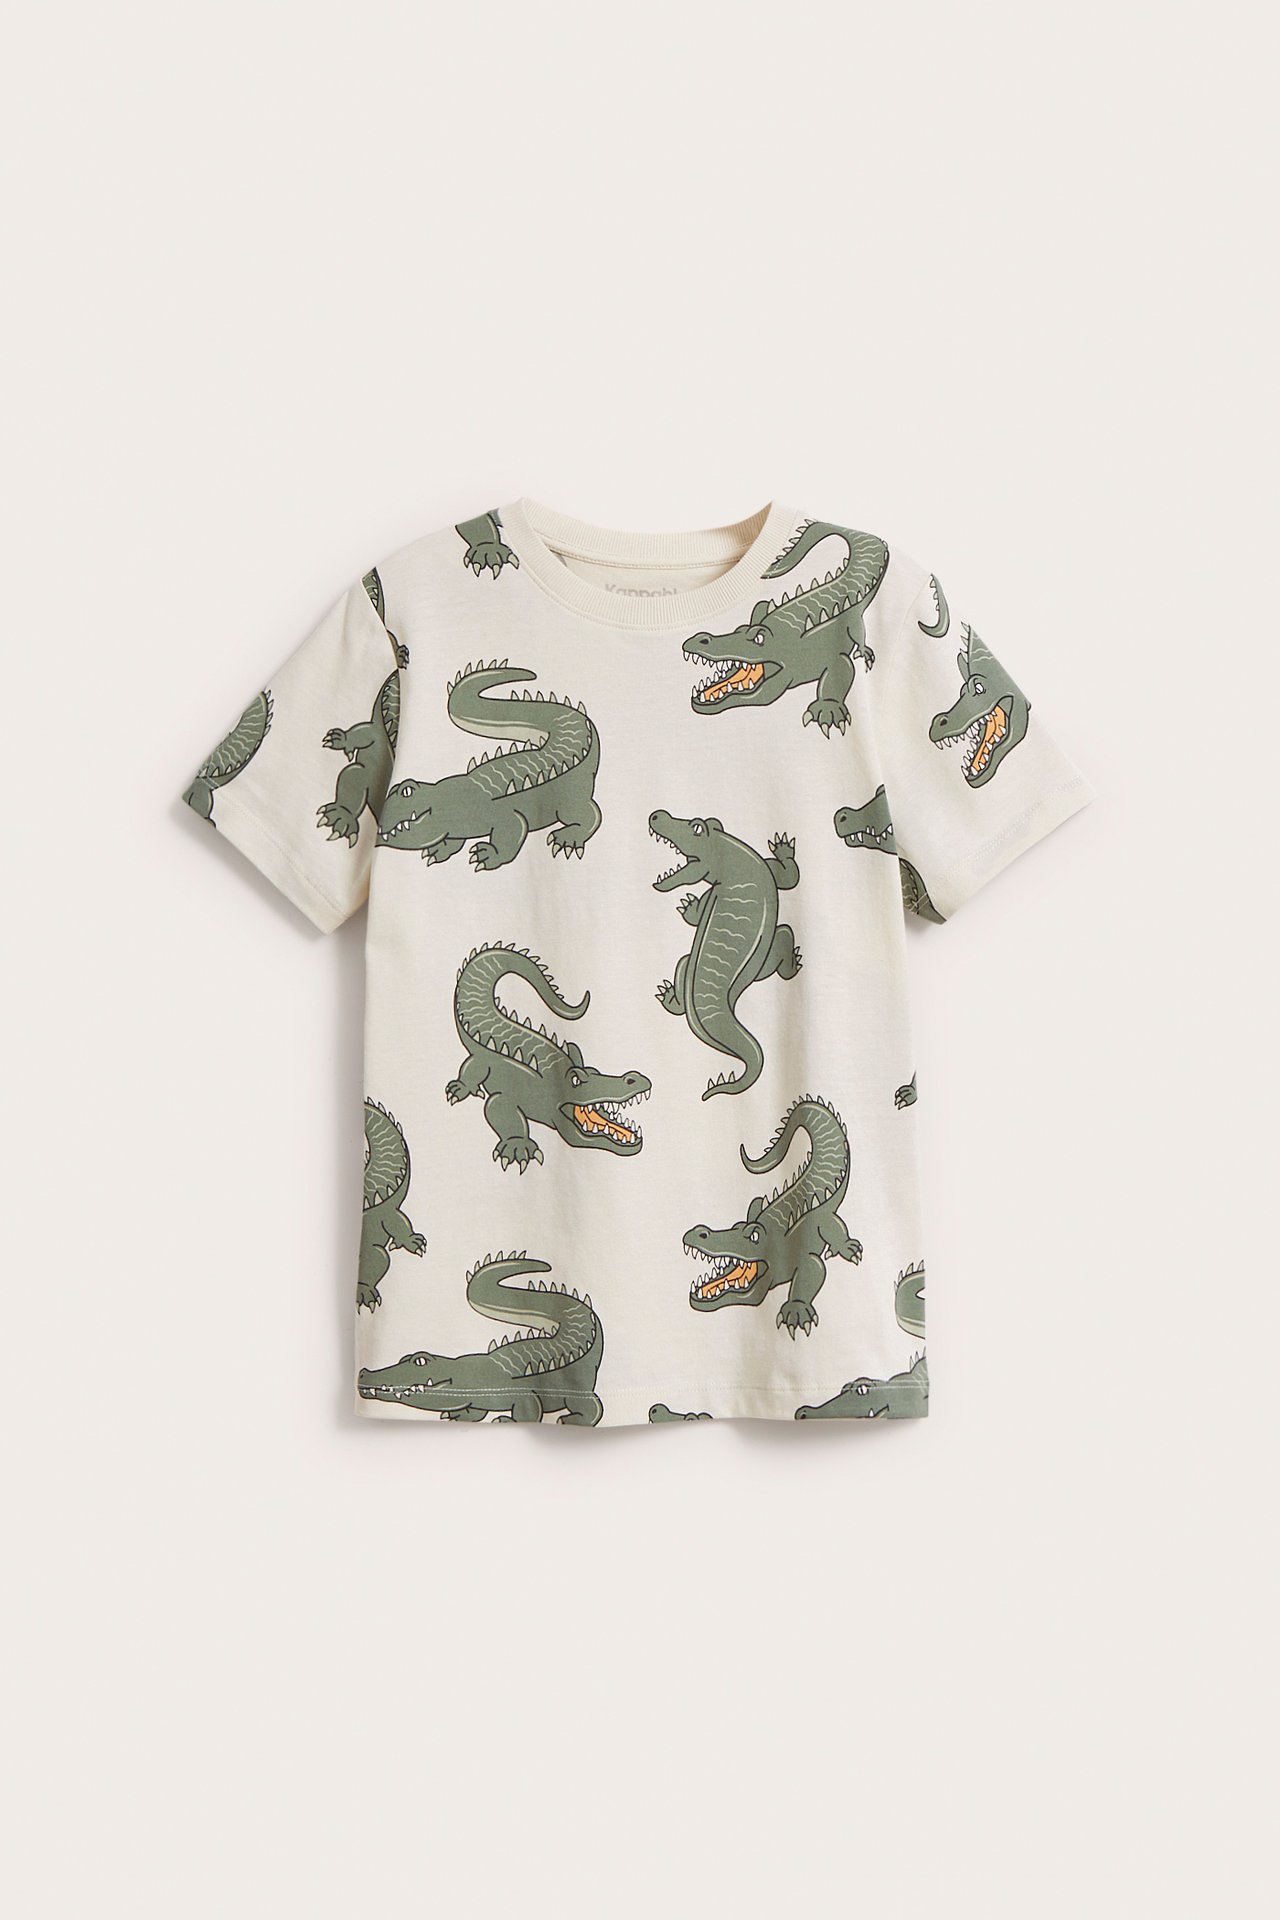 T-paita, jossa on krokotiiliteema